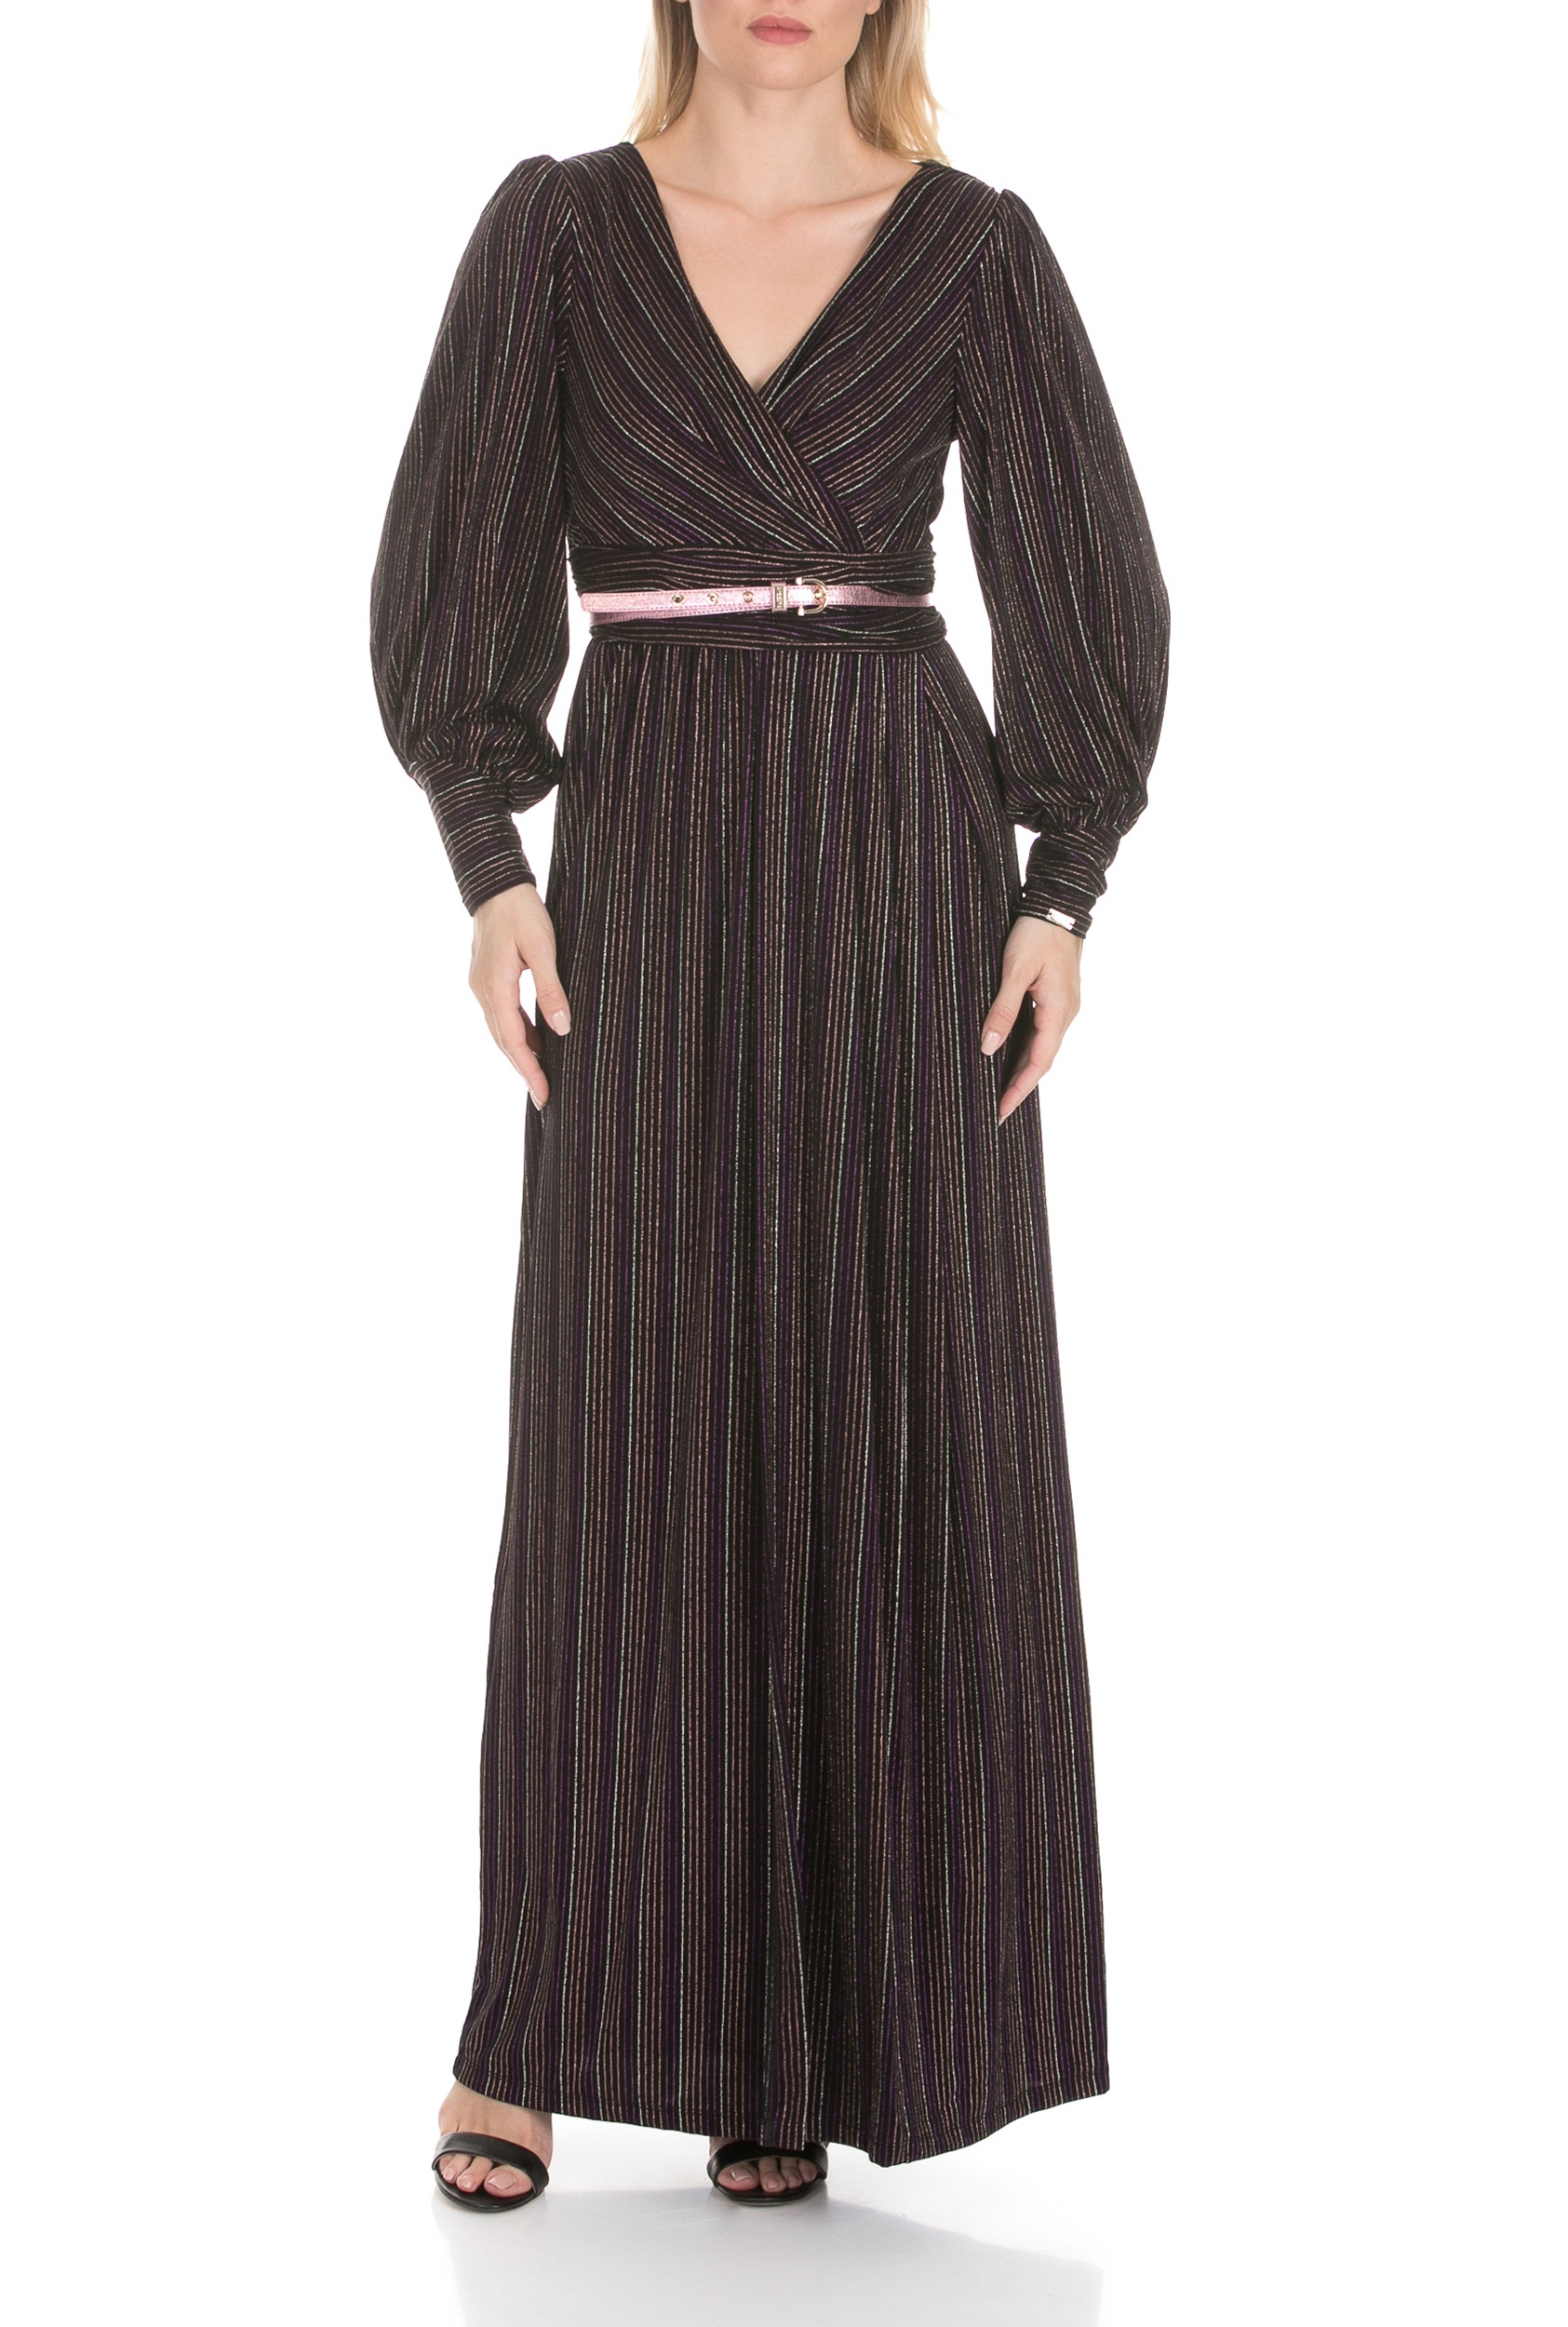 Γυναικεία/Ρούχα/Φορέματα/Μάξι NENETTE - Γυναικείο μάξι φόρεμα NENETTE ALCIDE ριγέ